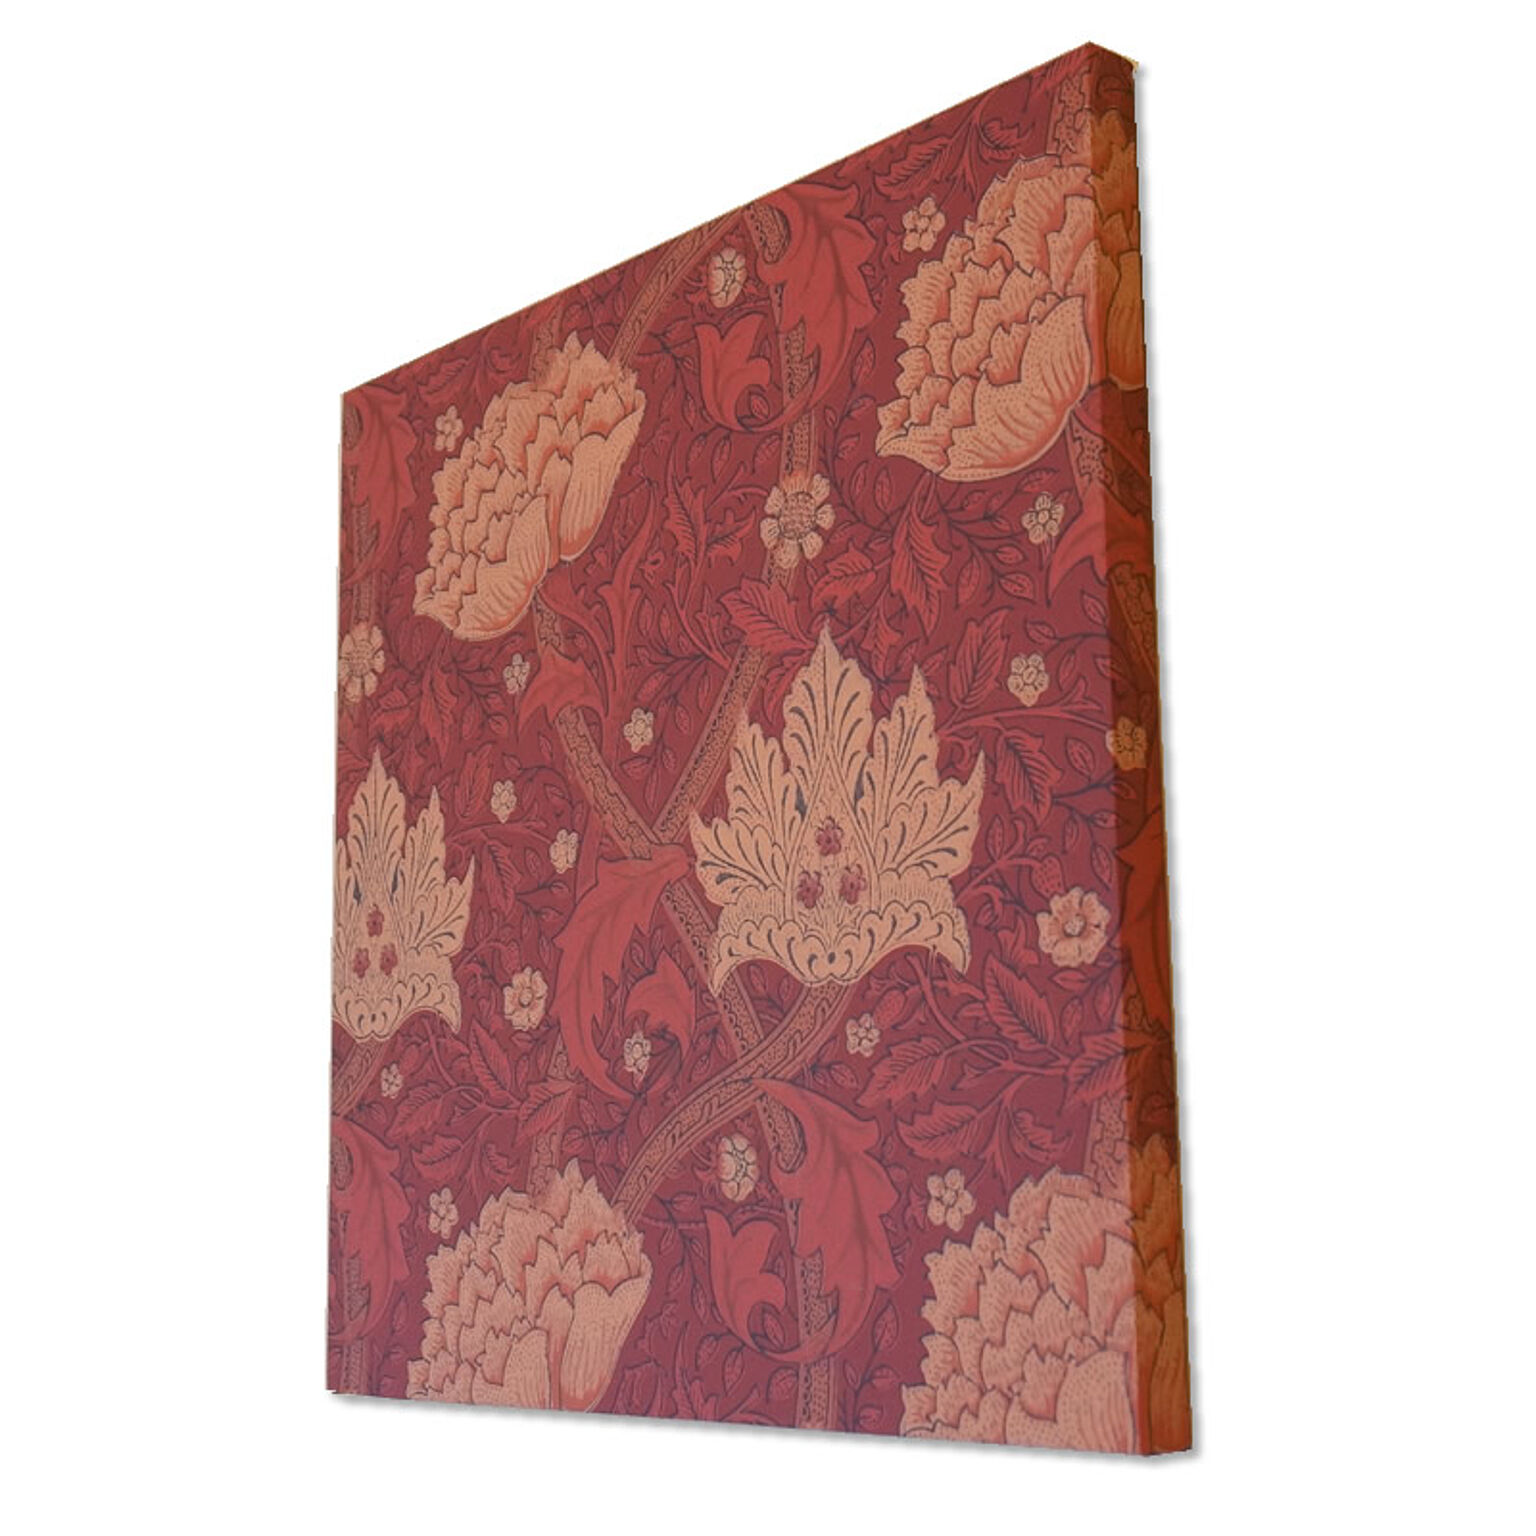 ウィリアムモリス アートパネル 壁紙 ウィンドラッシュ Windrush 木製パネル使用 絵画 インテリア 赤 レッド